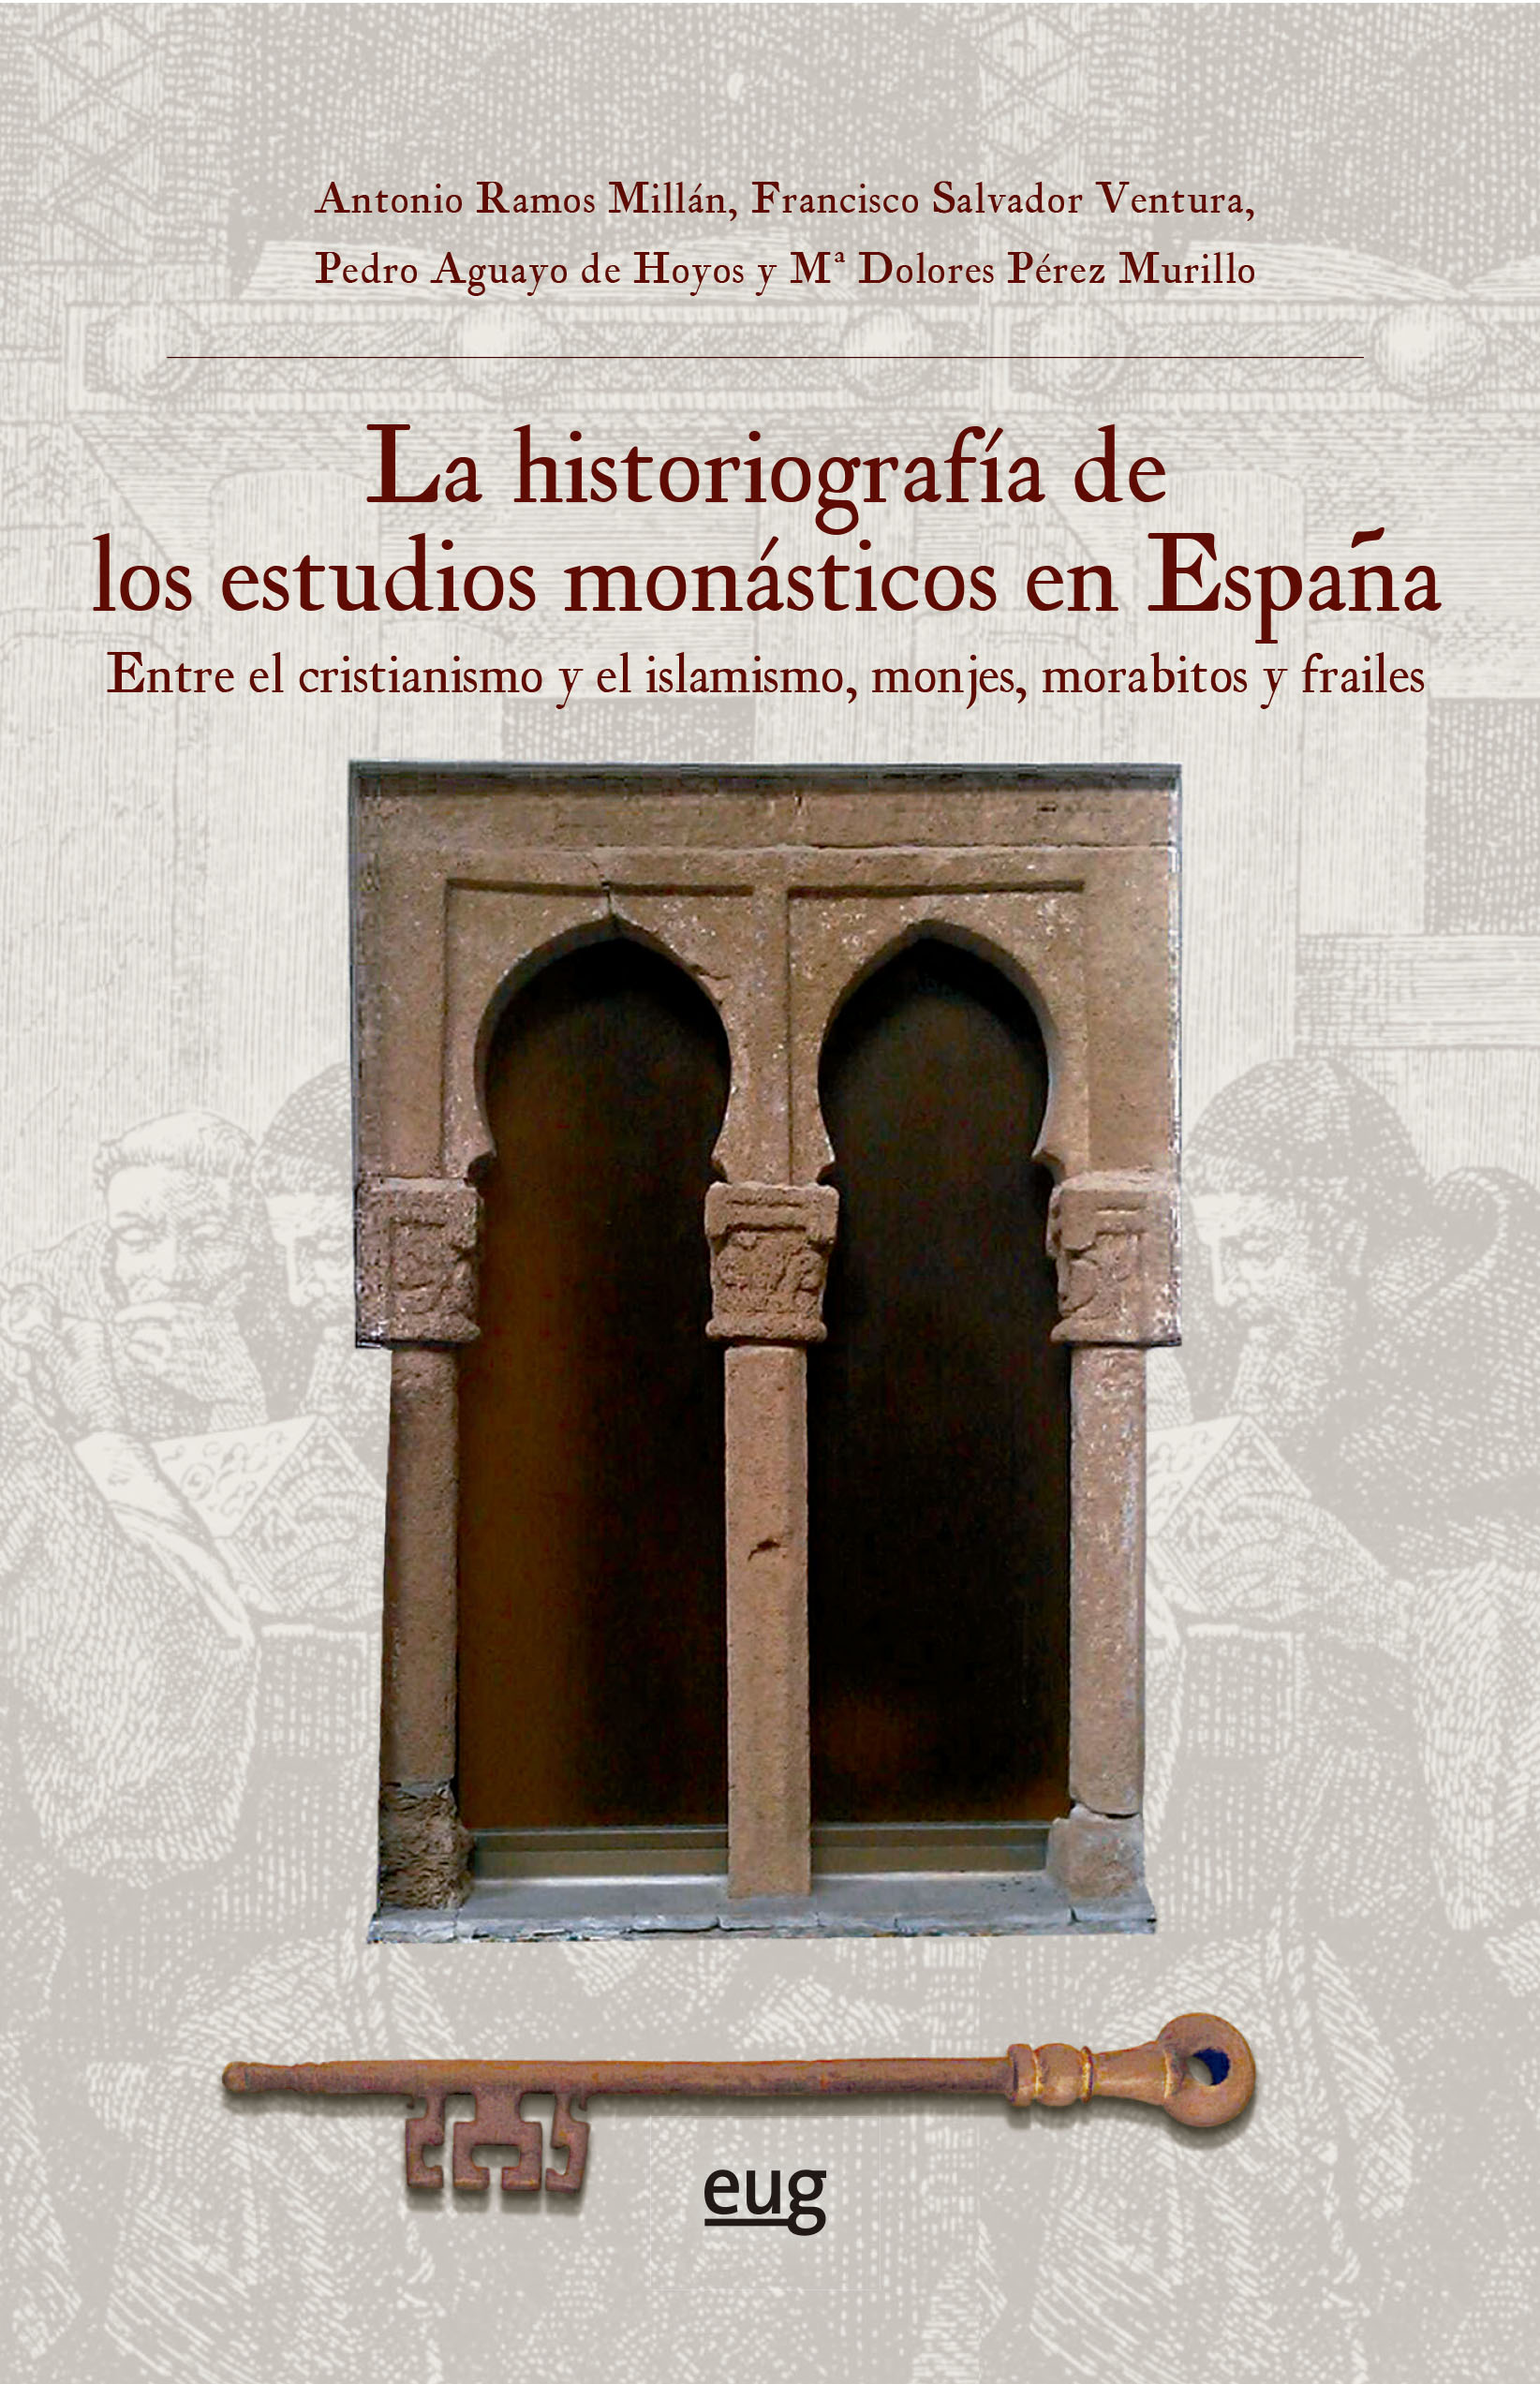 La historiografía de los estudios monásticos en España. 9788433870179